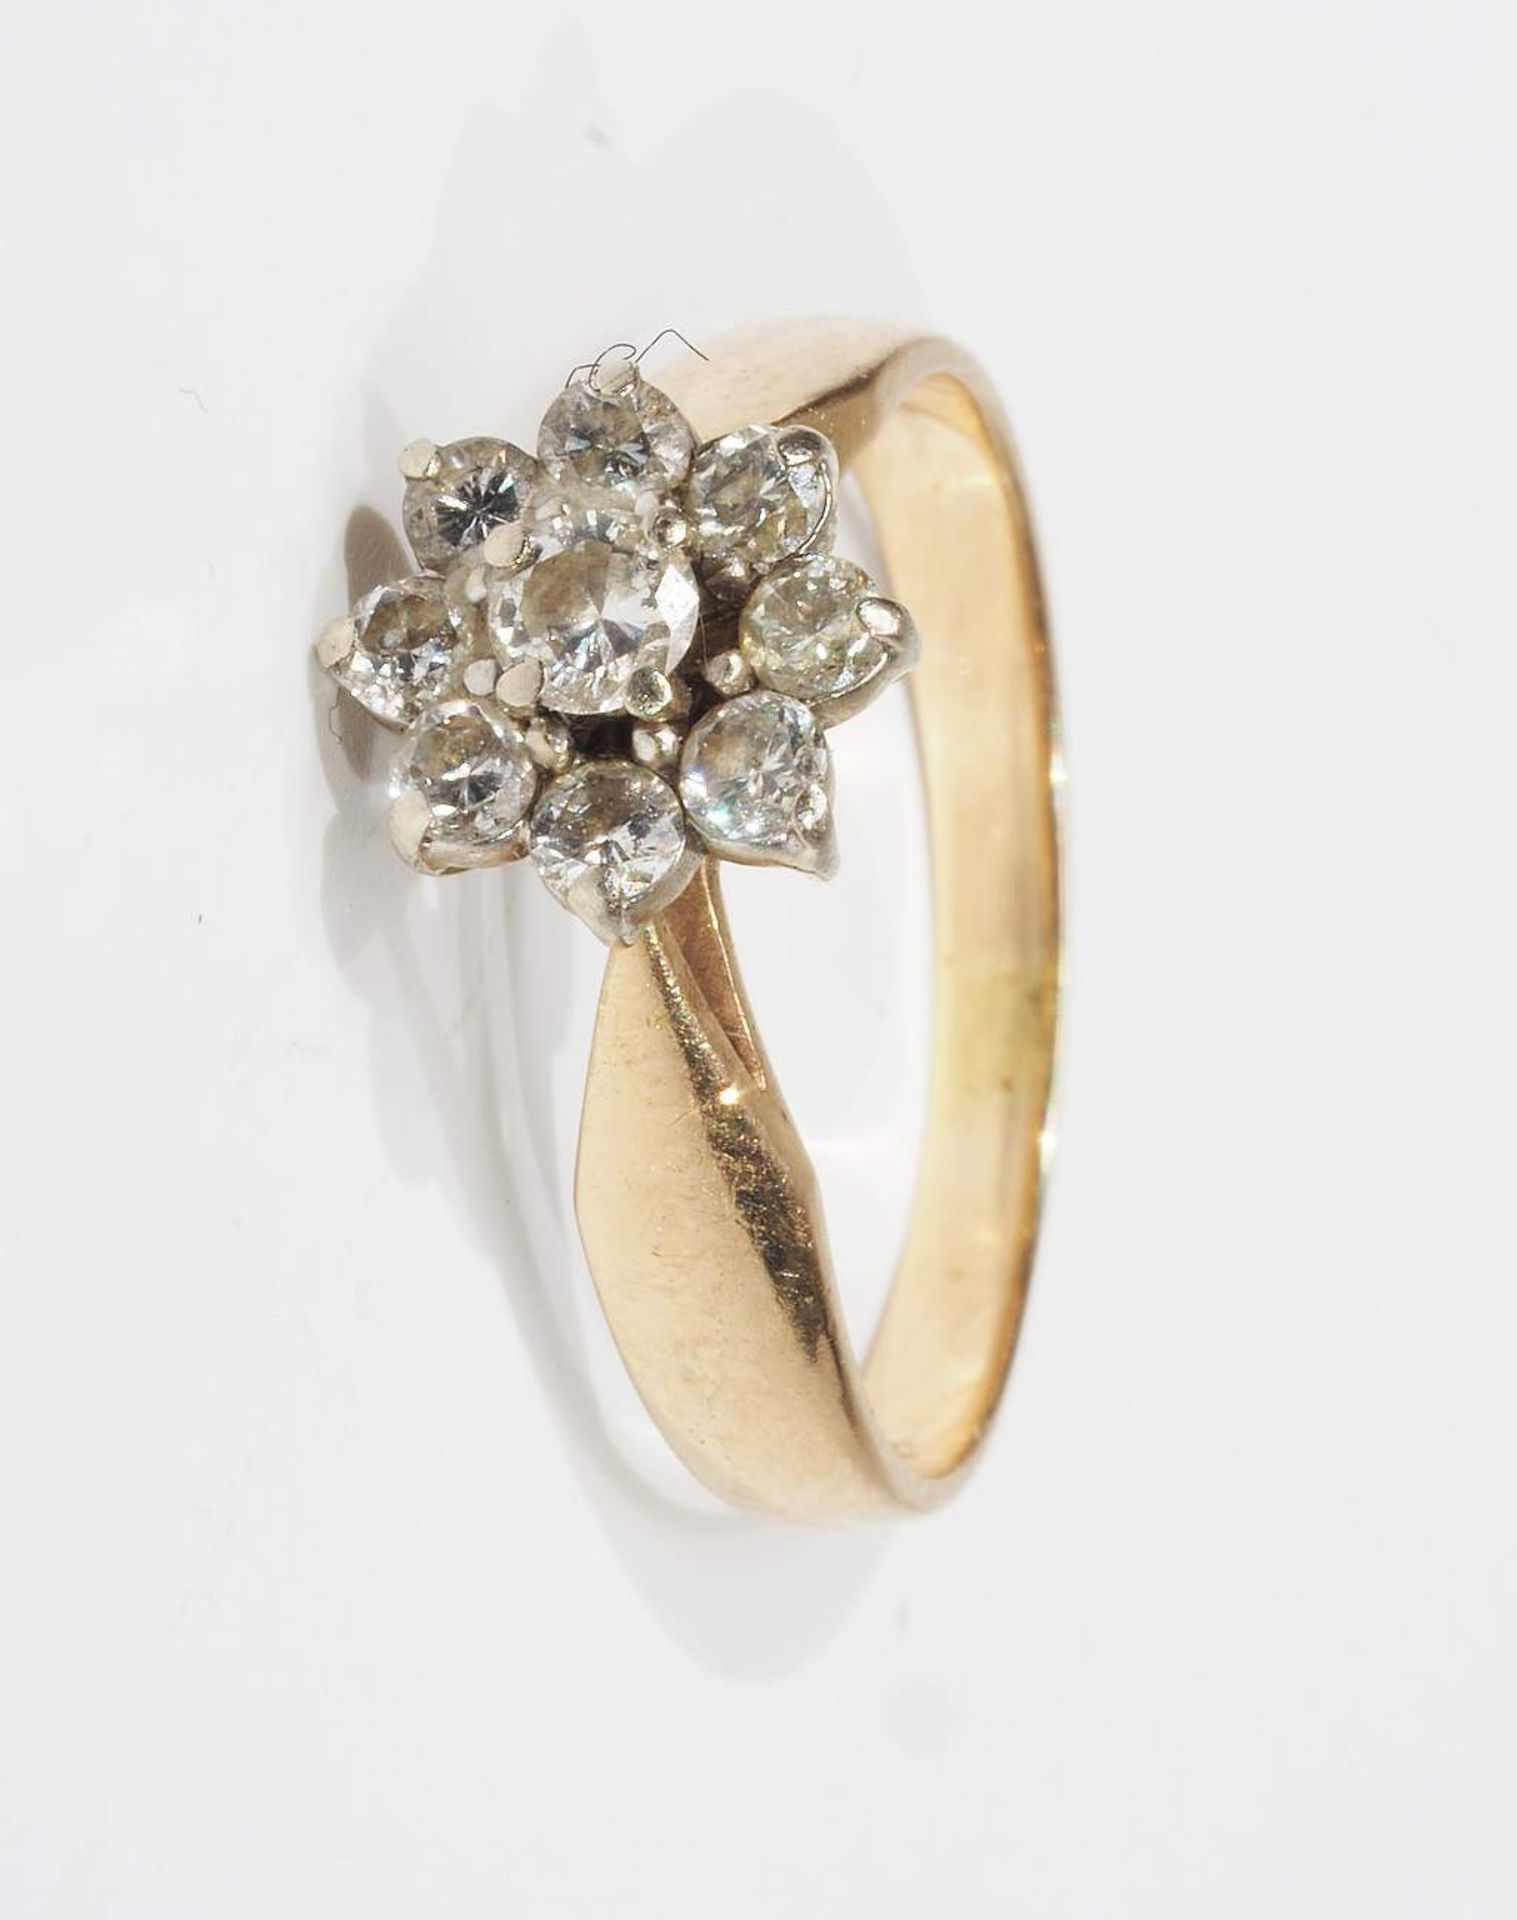 Ring mit Brillantrosette. 585er Gelbgold. Brillantbesatz von ca. 0,40 ct. J-K/i-p1, Ringgröße 55, - Image 2 of 5